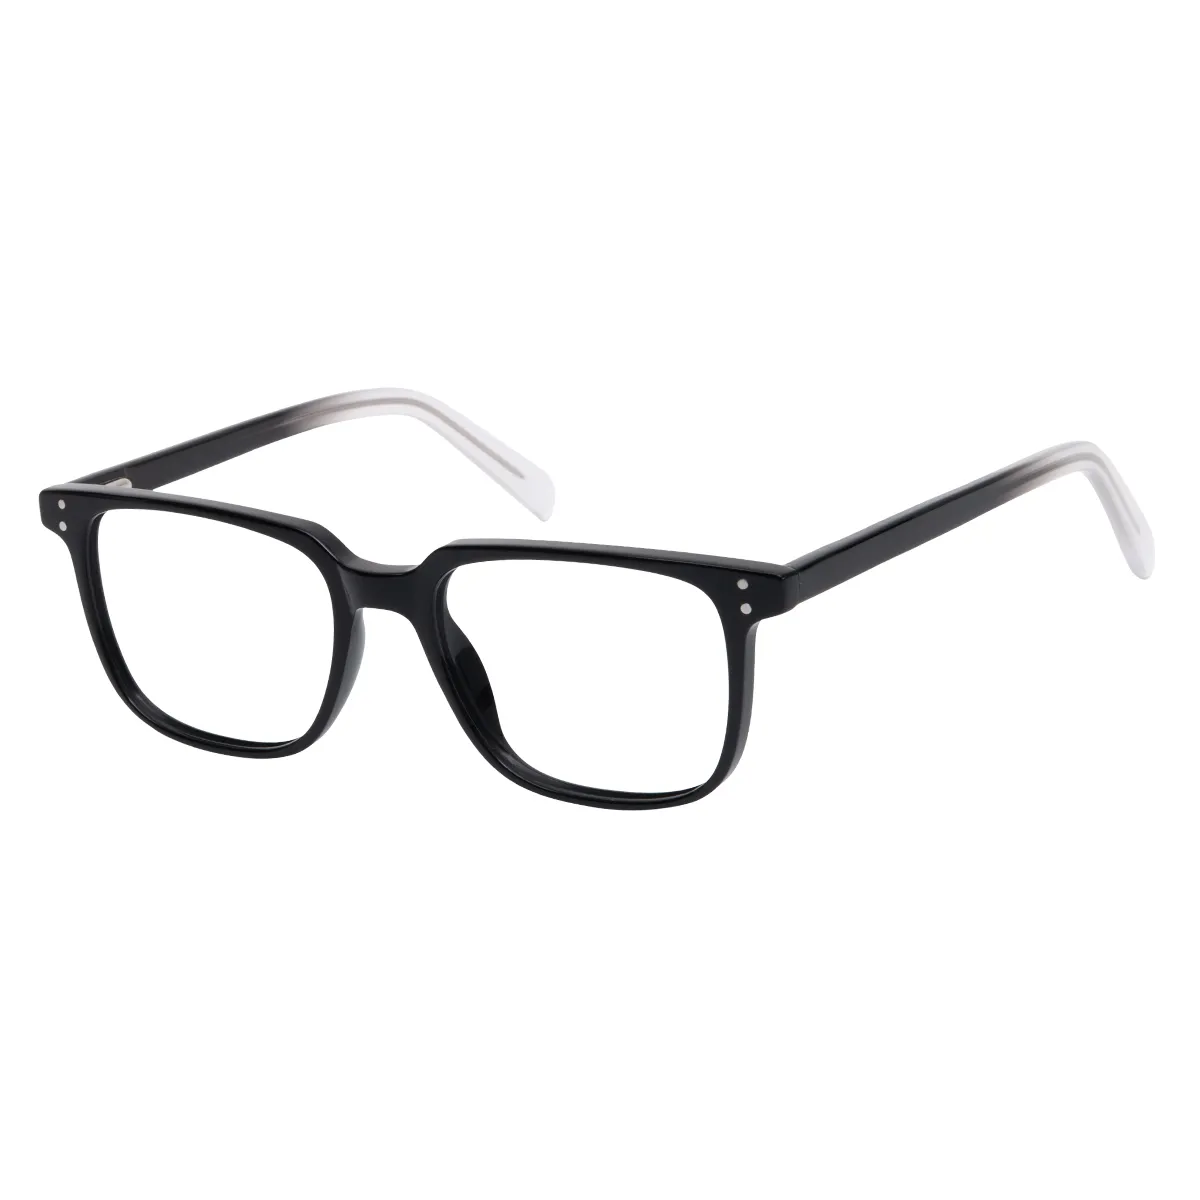 Edith - Rectangle Black Glasses for Men & Women